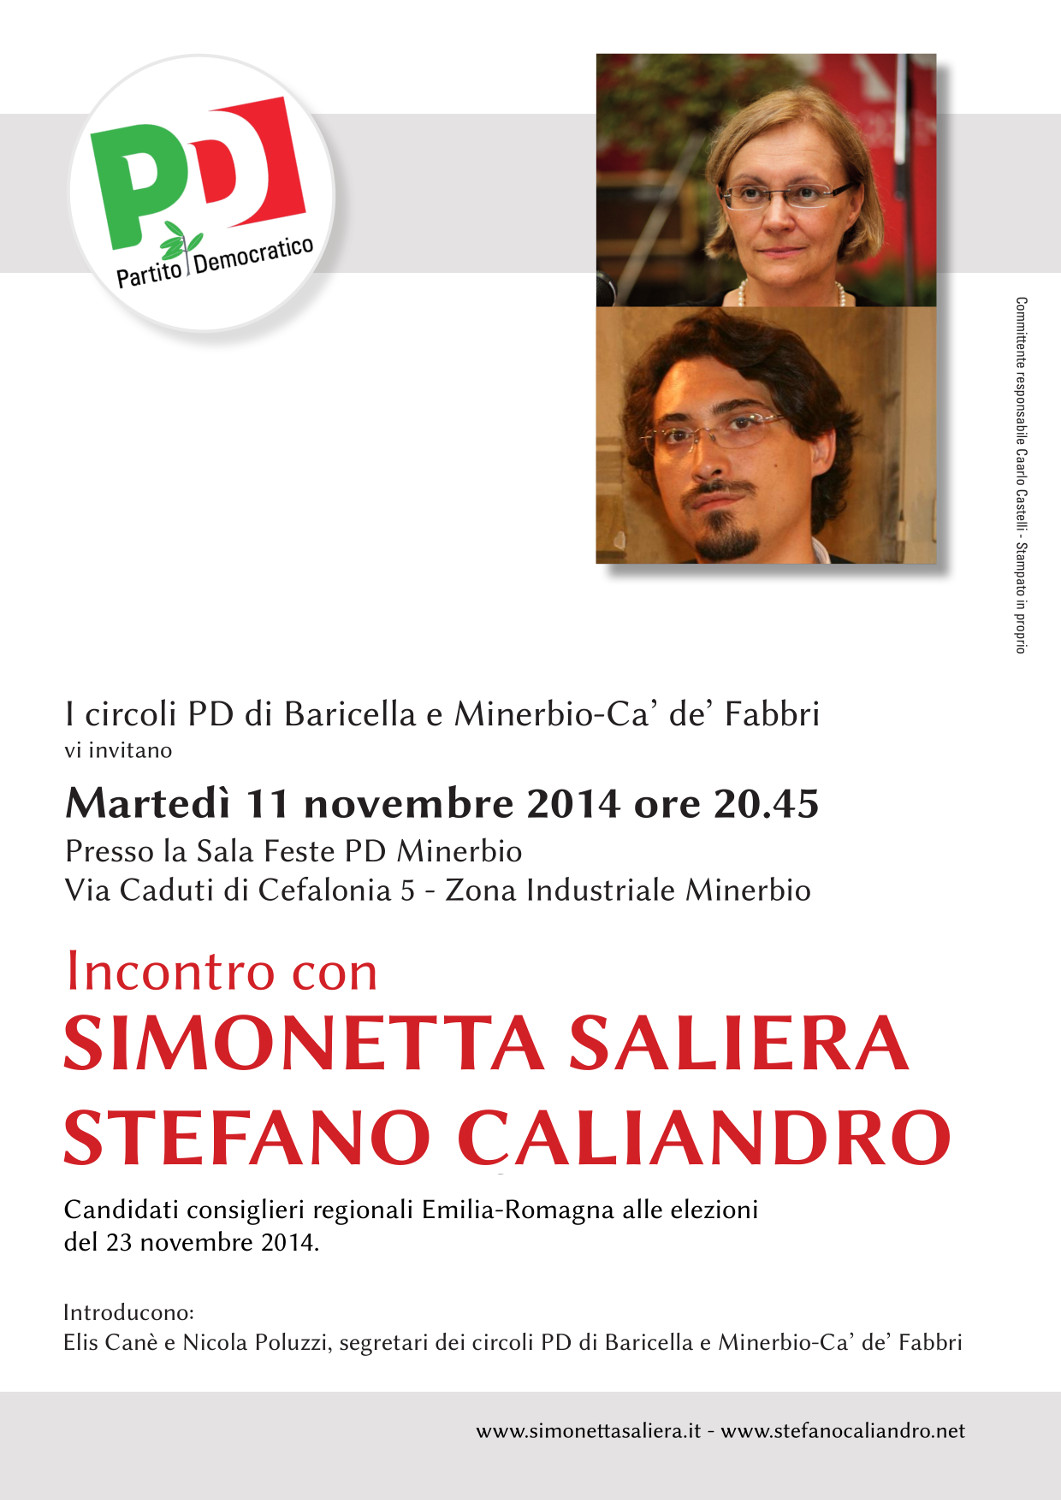 Incontri con Simonetta Saliera e Stefano Caliandro, candidati consigliere regionale